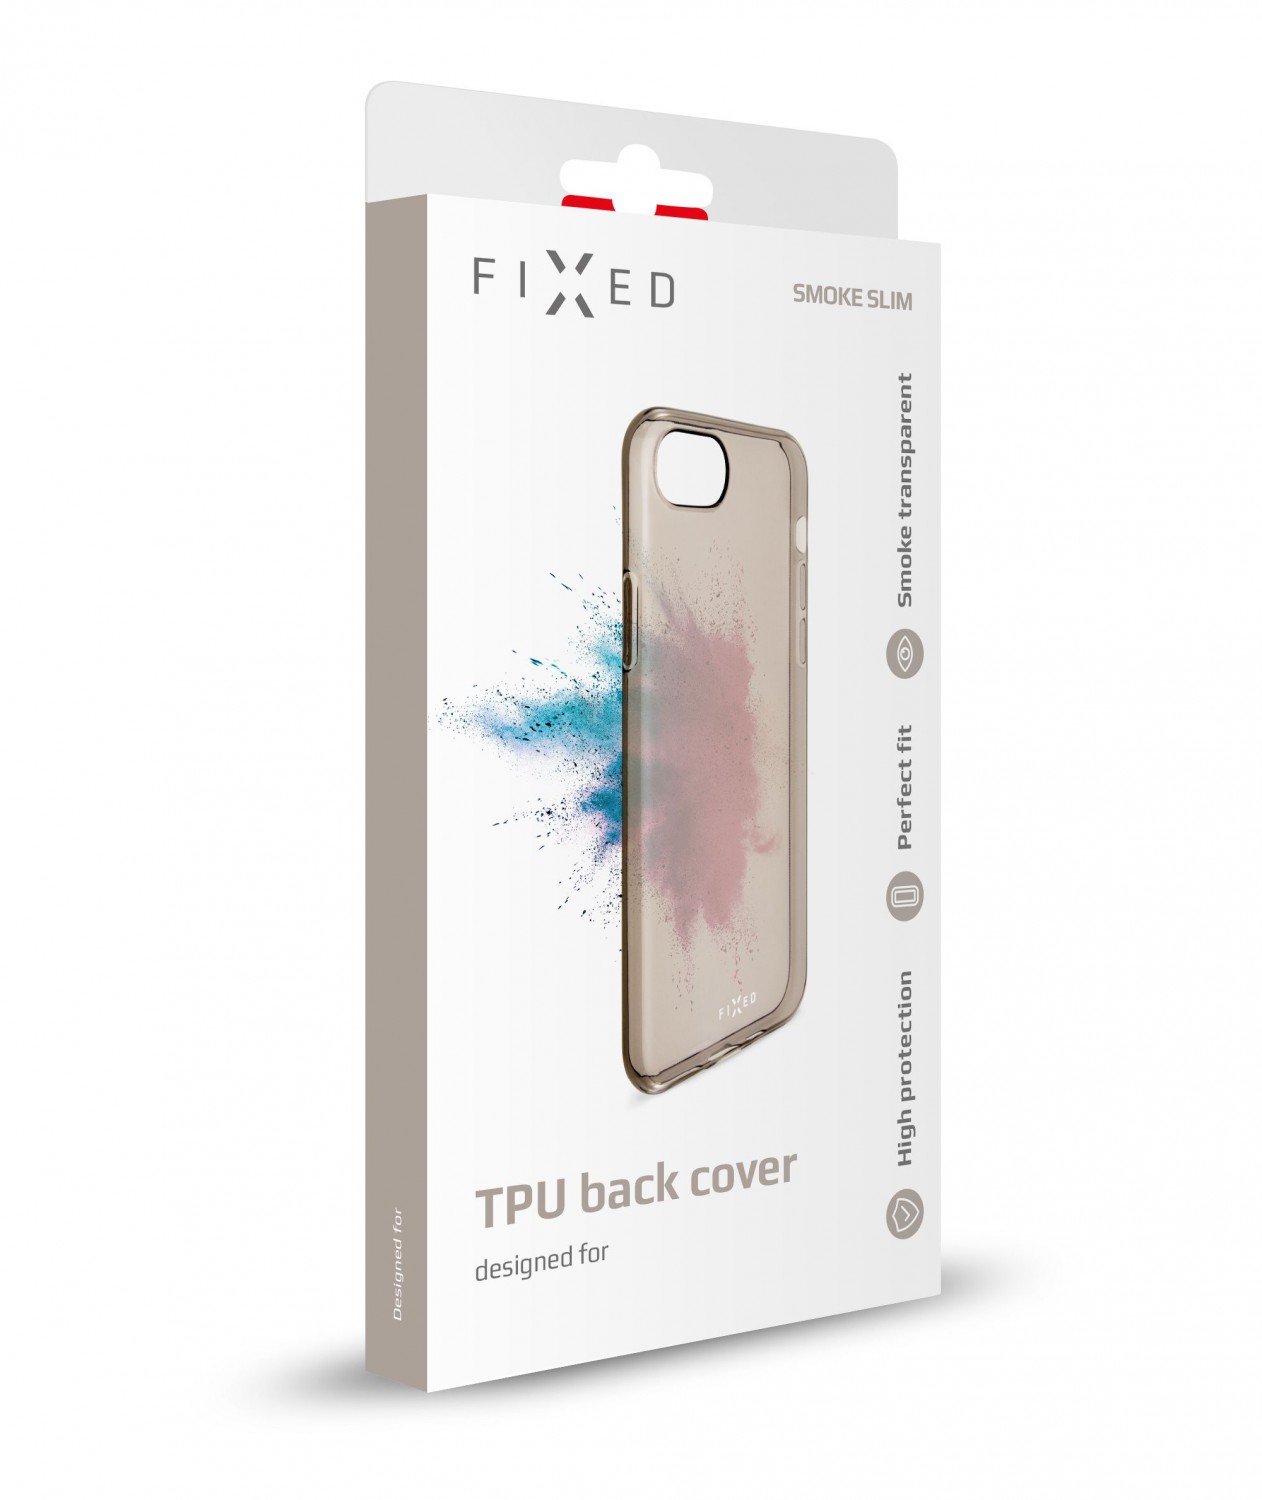 Silikonové pouzdro FIXED Slim pro Apple iPhone 11 Pro, kouřová